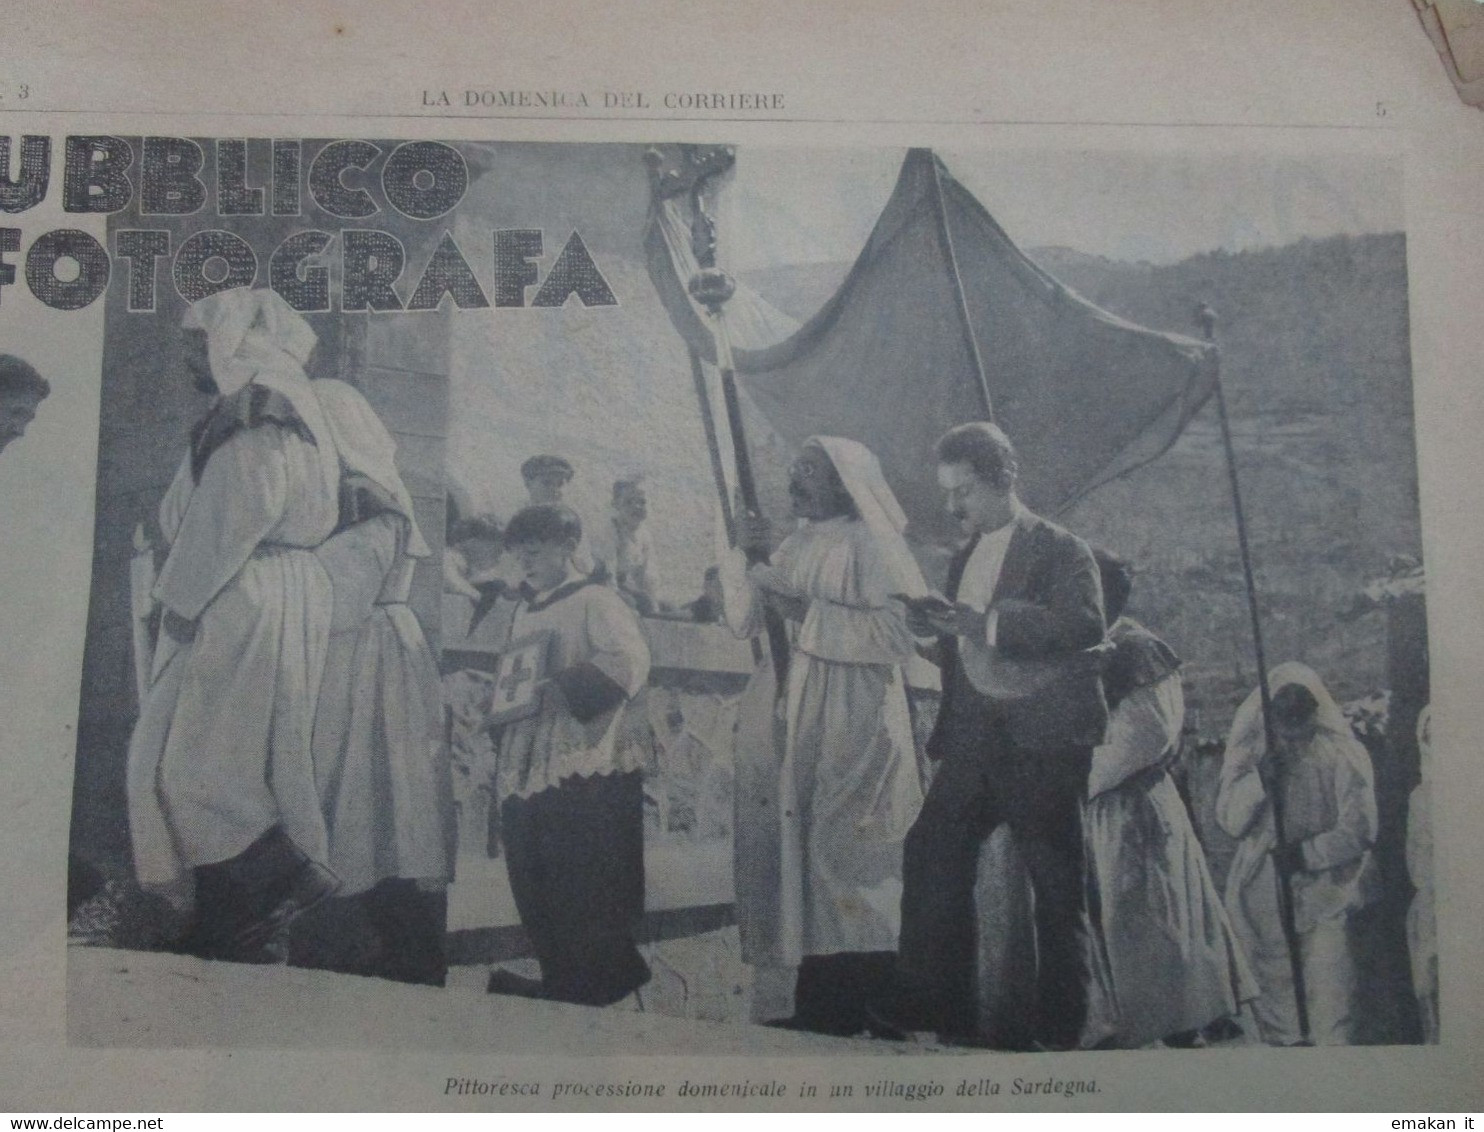 # DOMENICA DEL CORRIERE N 3 /1937 ETIOPIA / TORGIANO (PG) / PROCESSIONE IN SARDEGNA  / CAMPARI - Premières éditions